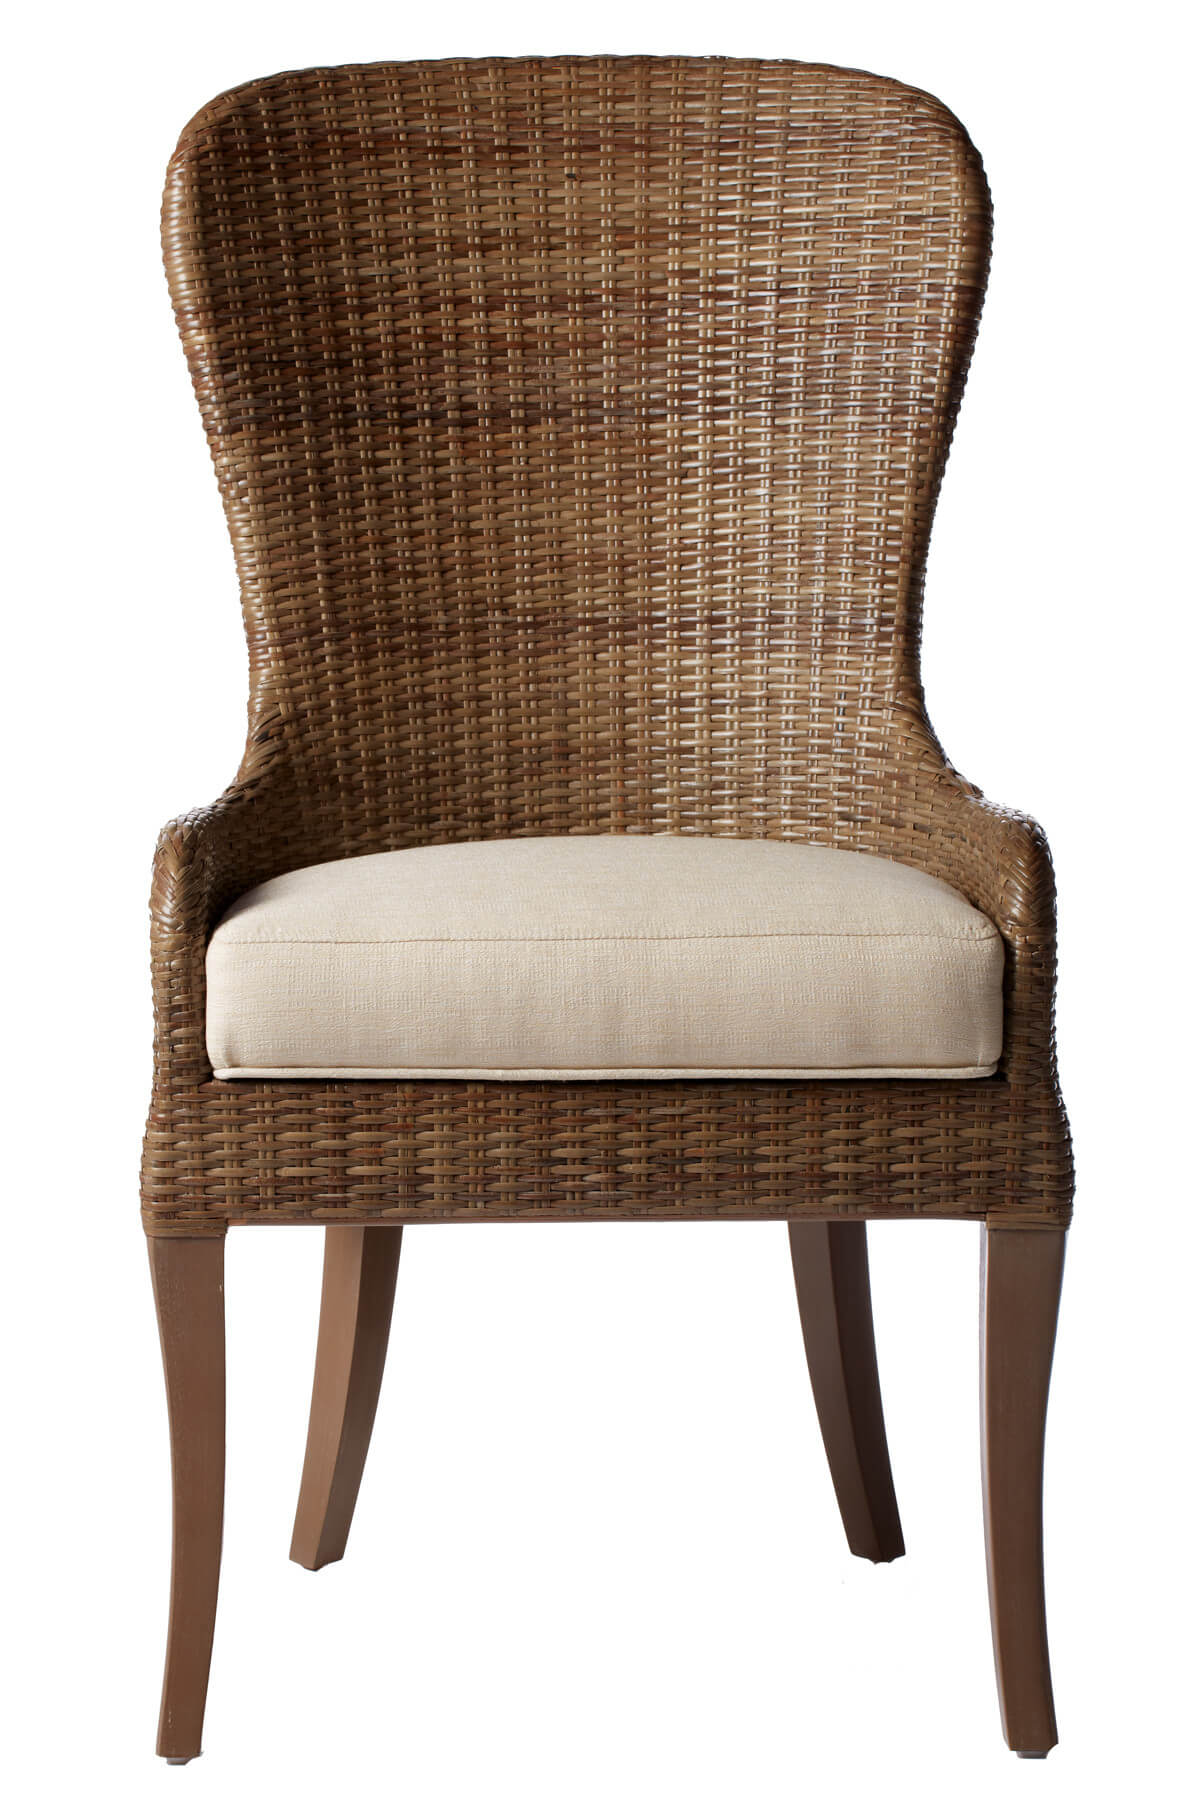 柳条框架最常见于用于庭院的餐椅上，但根据建造质量和风格，这种耐用的材料也可以达到豪华的上层。我们的特色示例展示了混合木材和柳条设计，带有软垫坐垫。